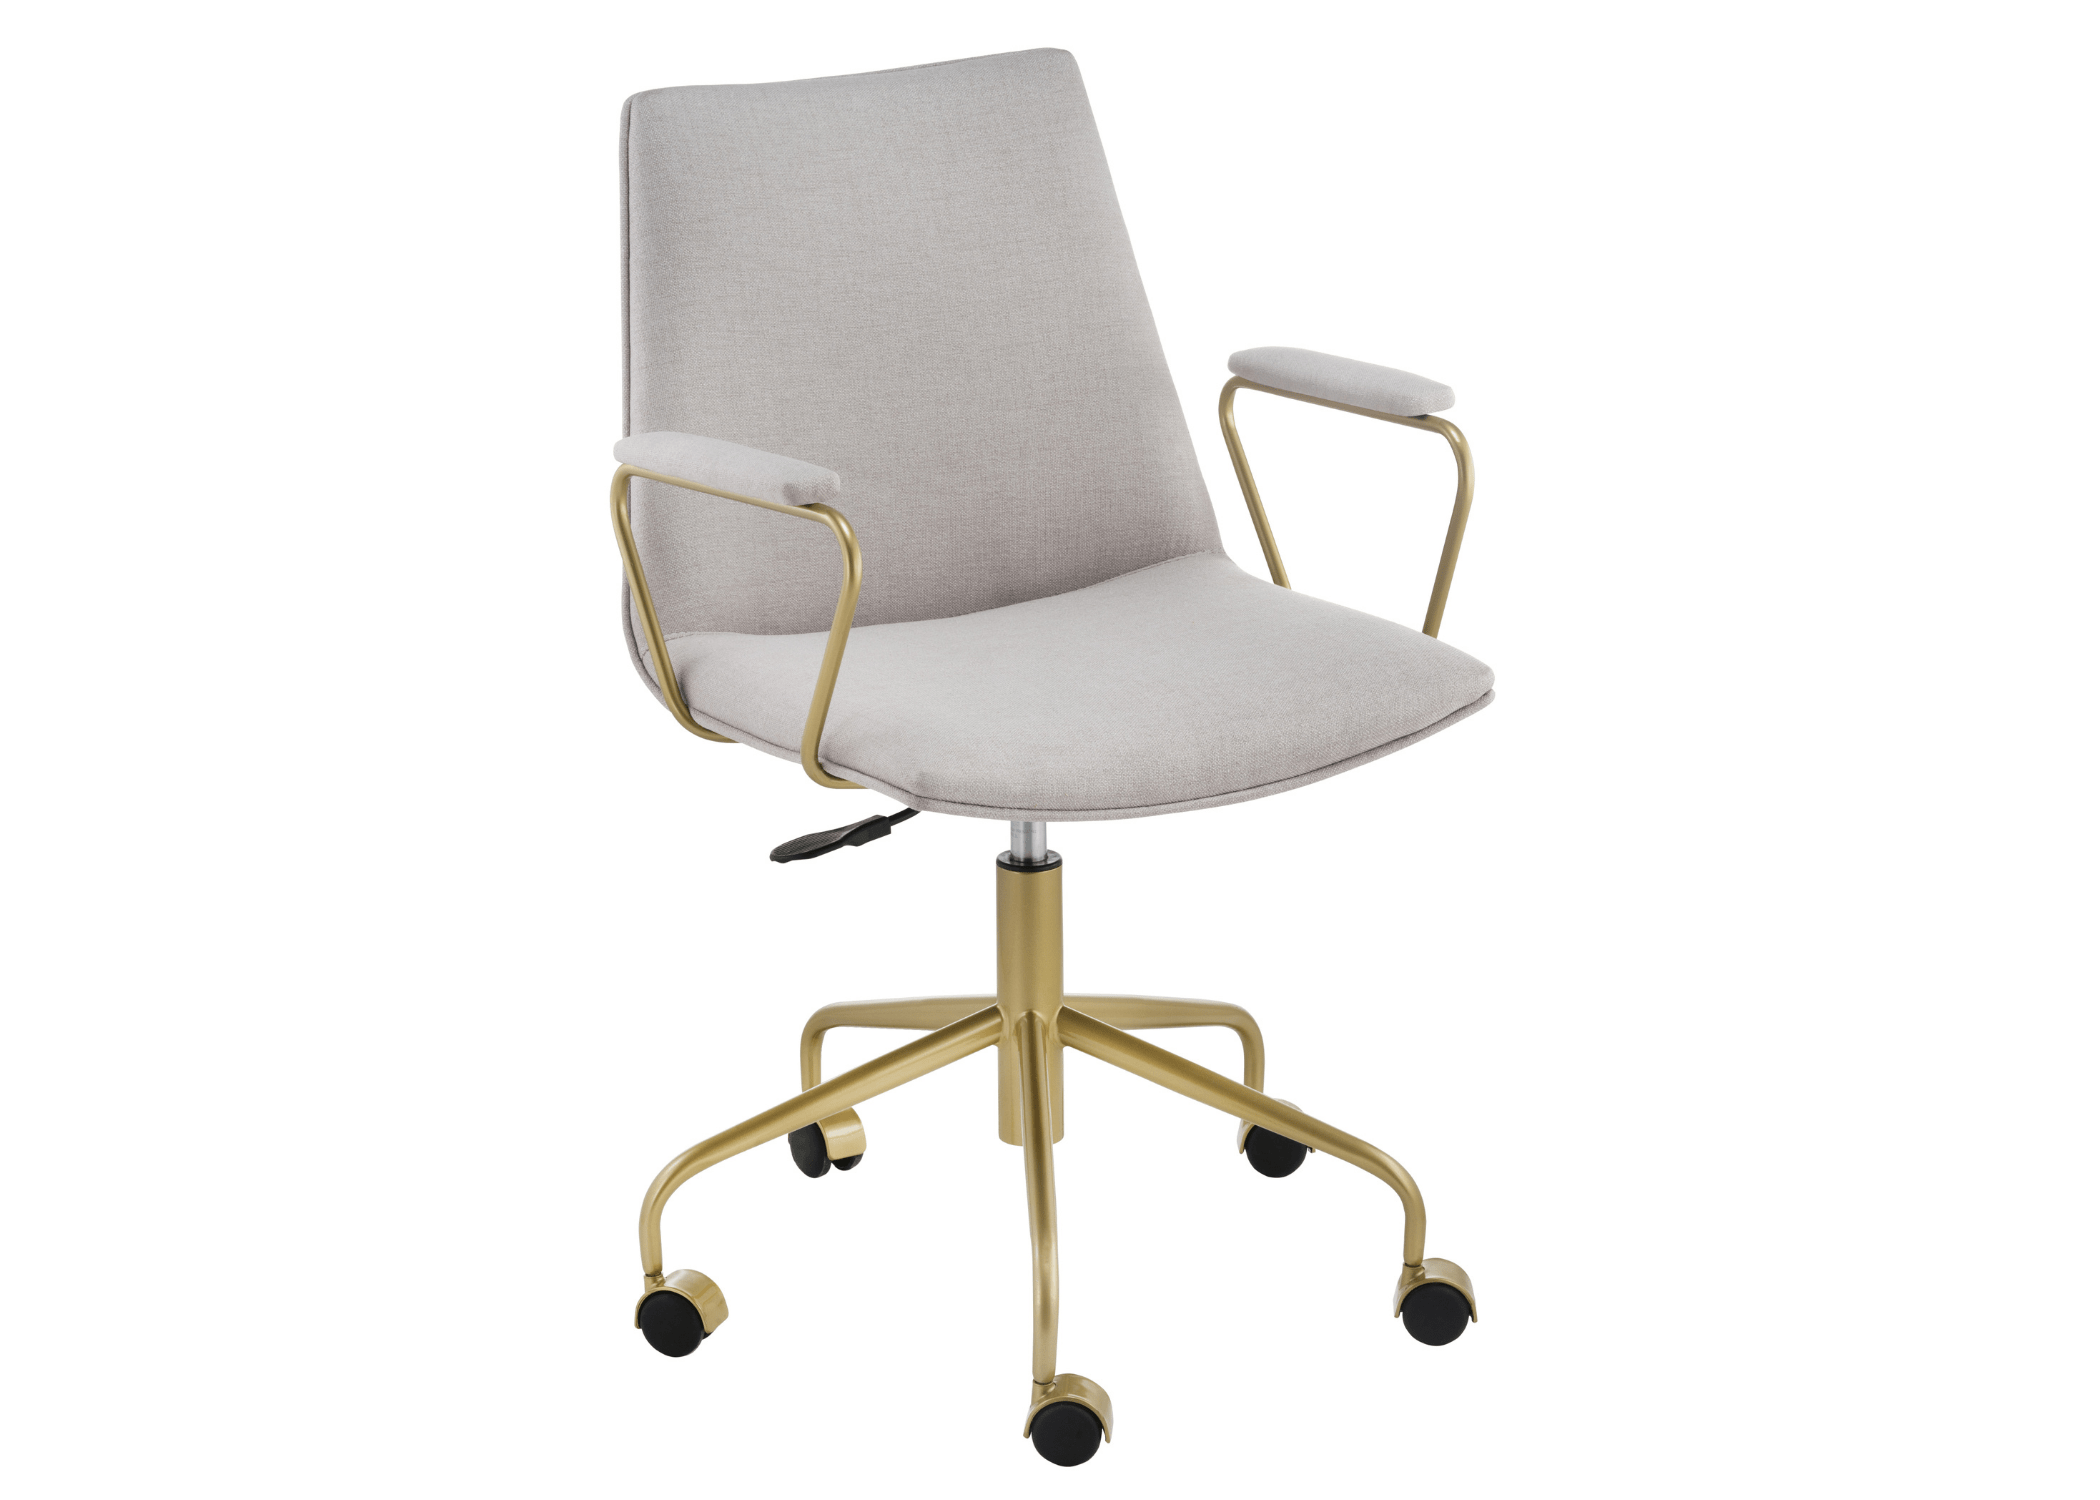 A Cadeira Wendy é a escolha ideal para quem busca estilo e conforto no ambiente de trabalho.